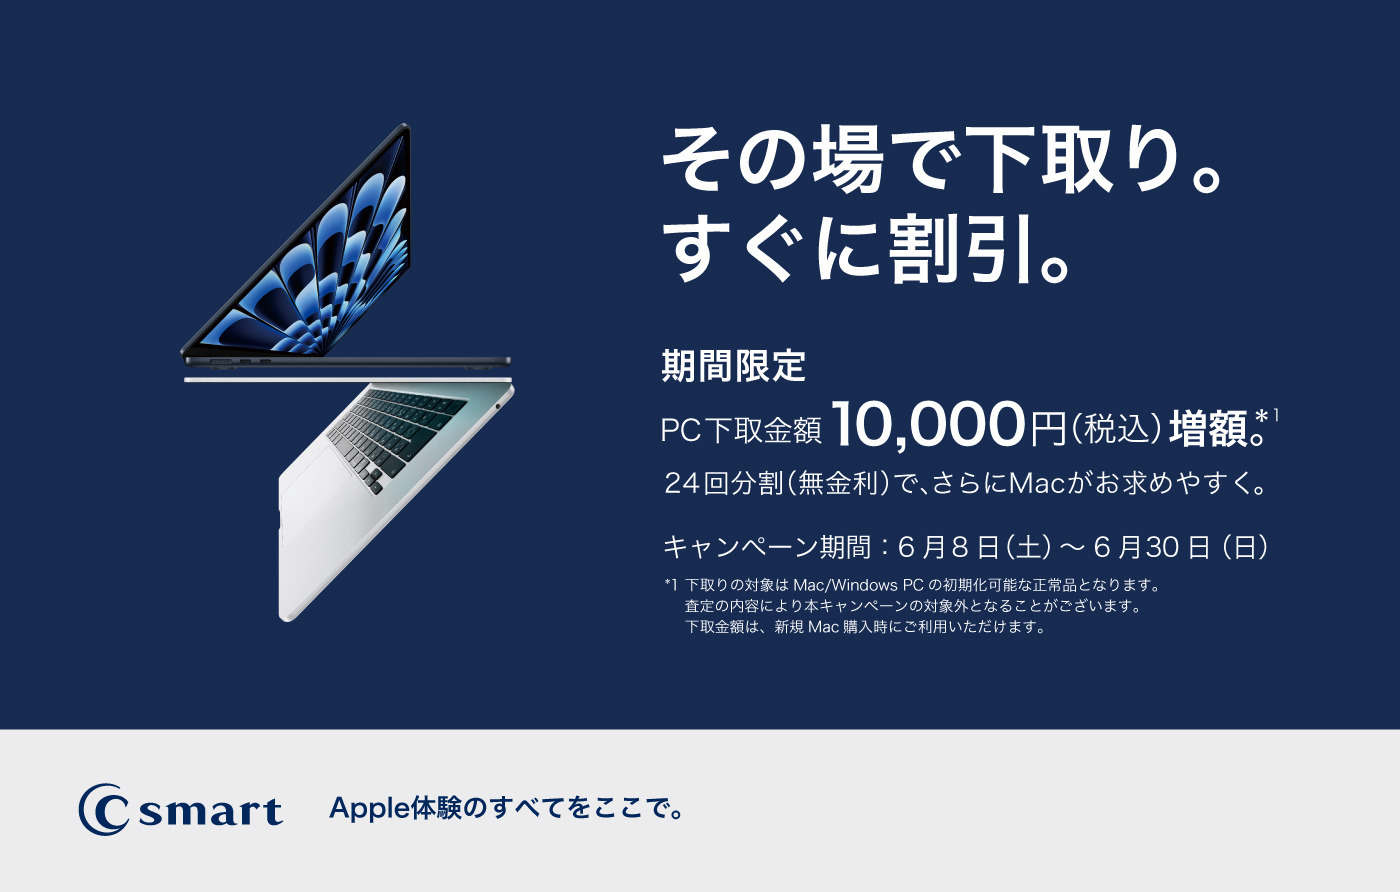 【店舗限定】Mac/PC下取り増額キャンペーン